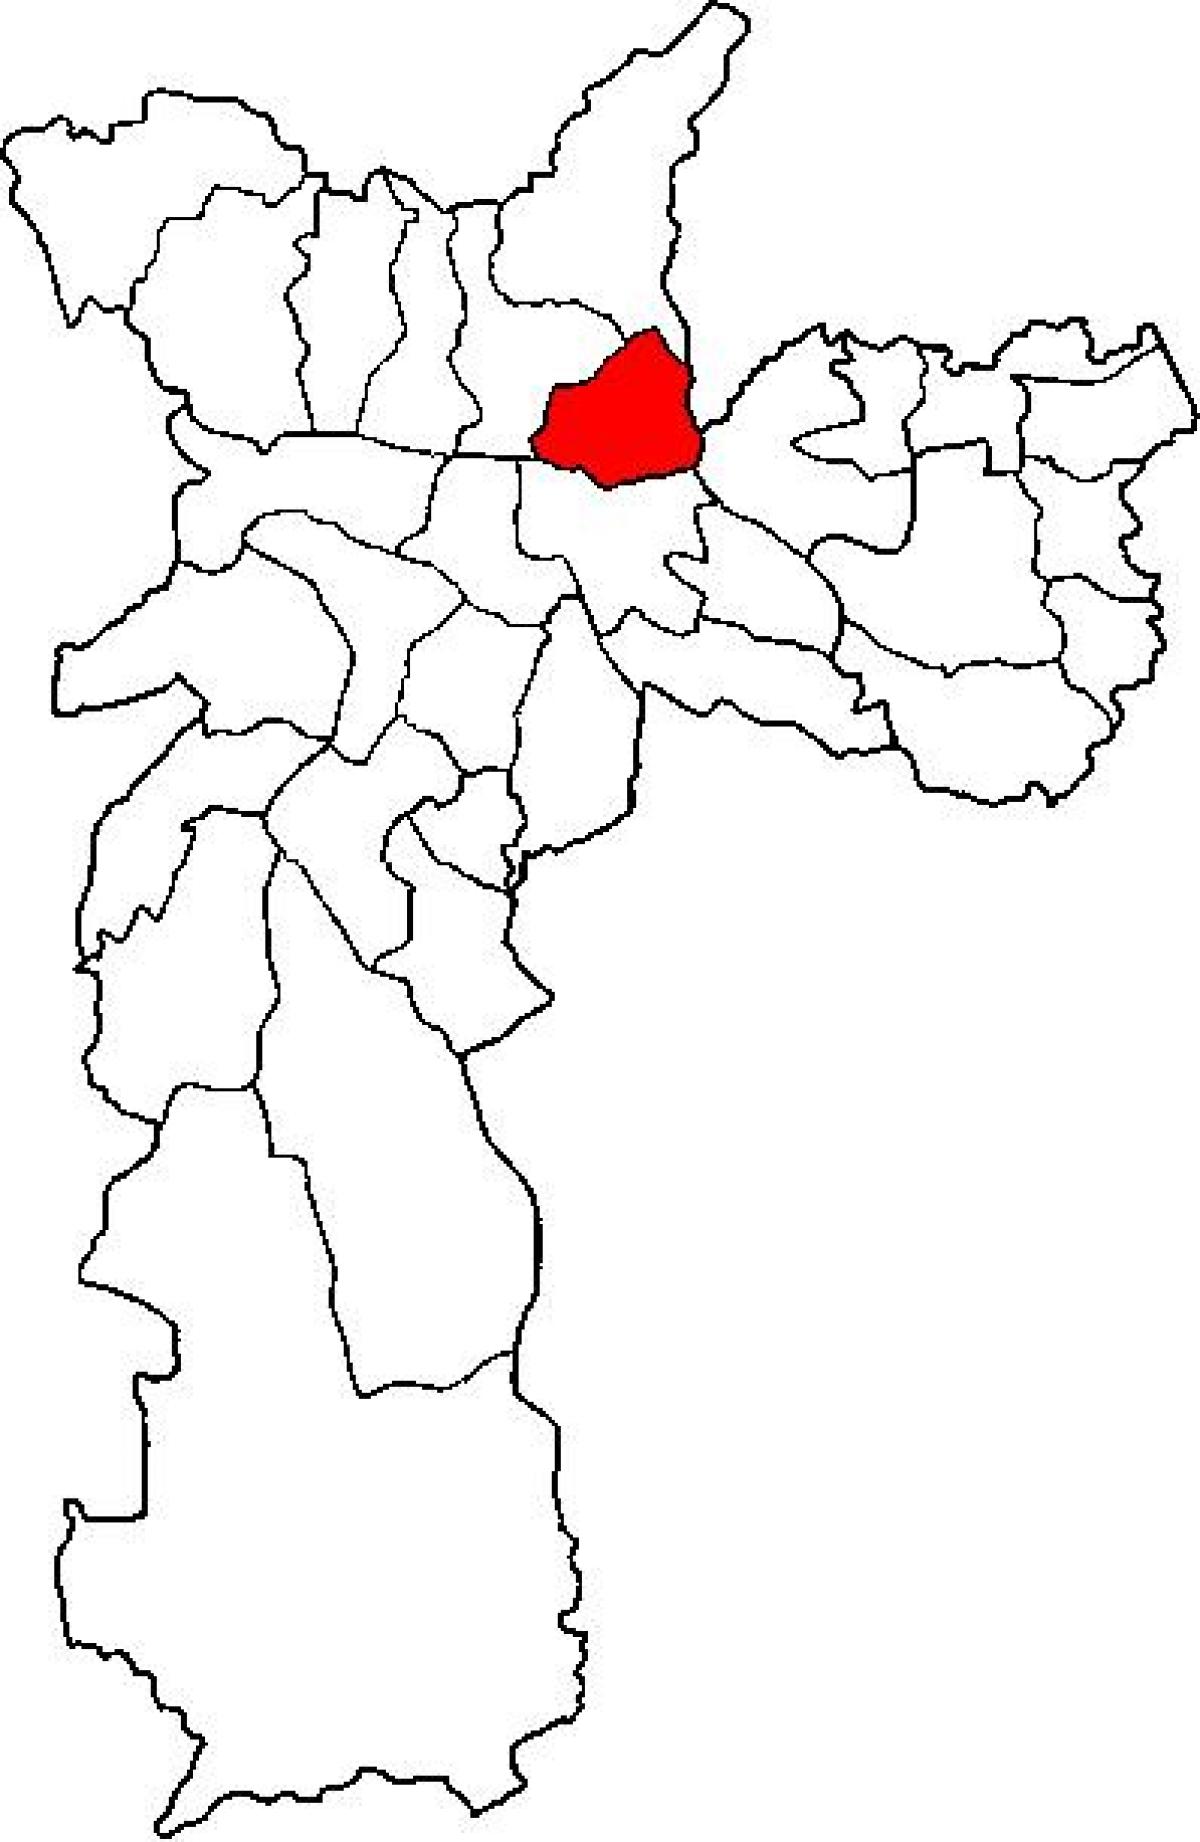 نقشہ کی ولا ماریا ذیلی صوبے ساؤ پالو